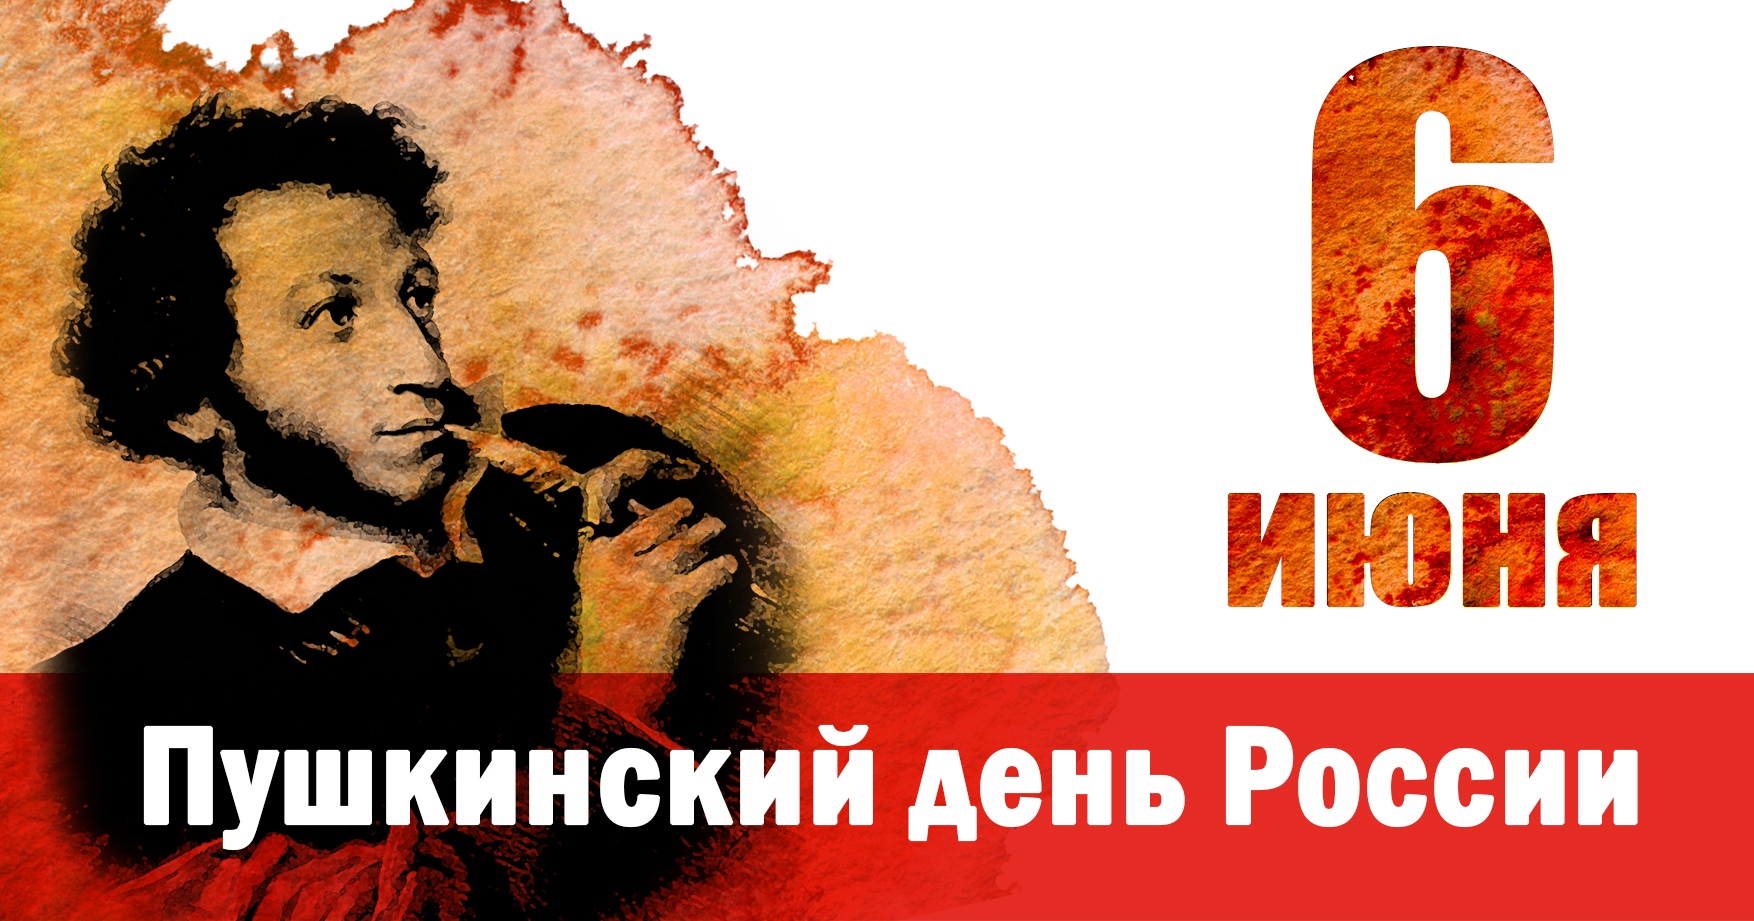 6 июня 2020 день. Пушкин 6 июня день русского языка. 6 Июня день рождения Пушкина.